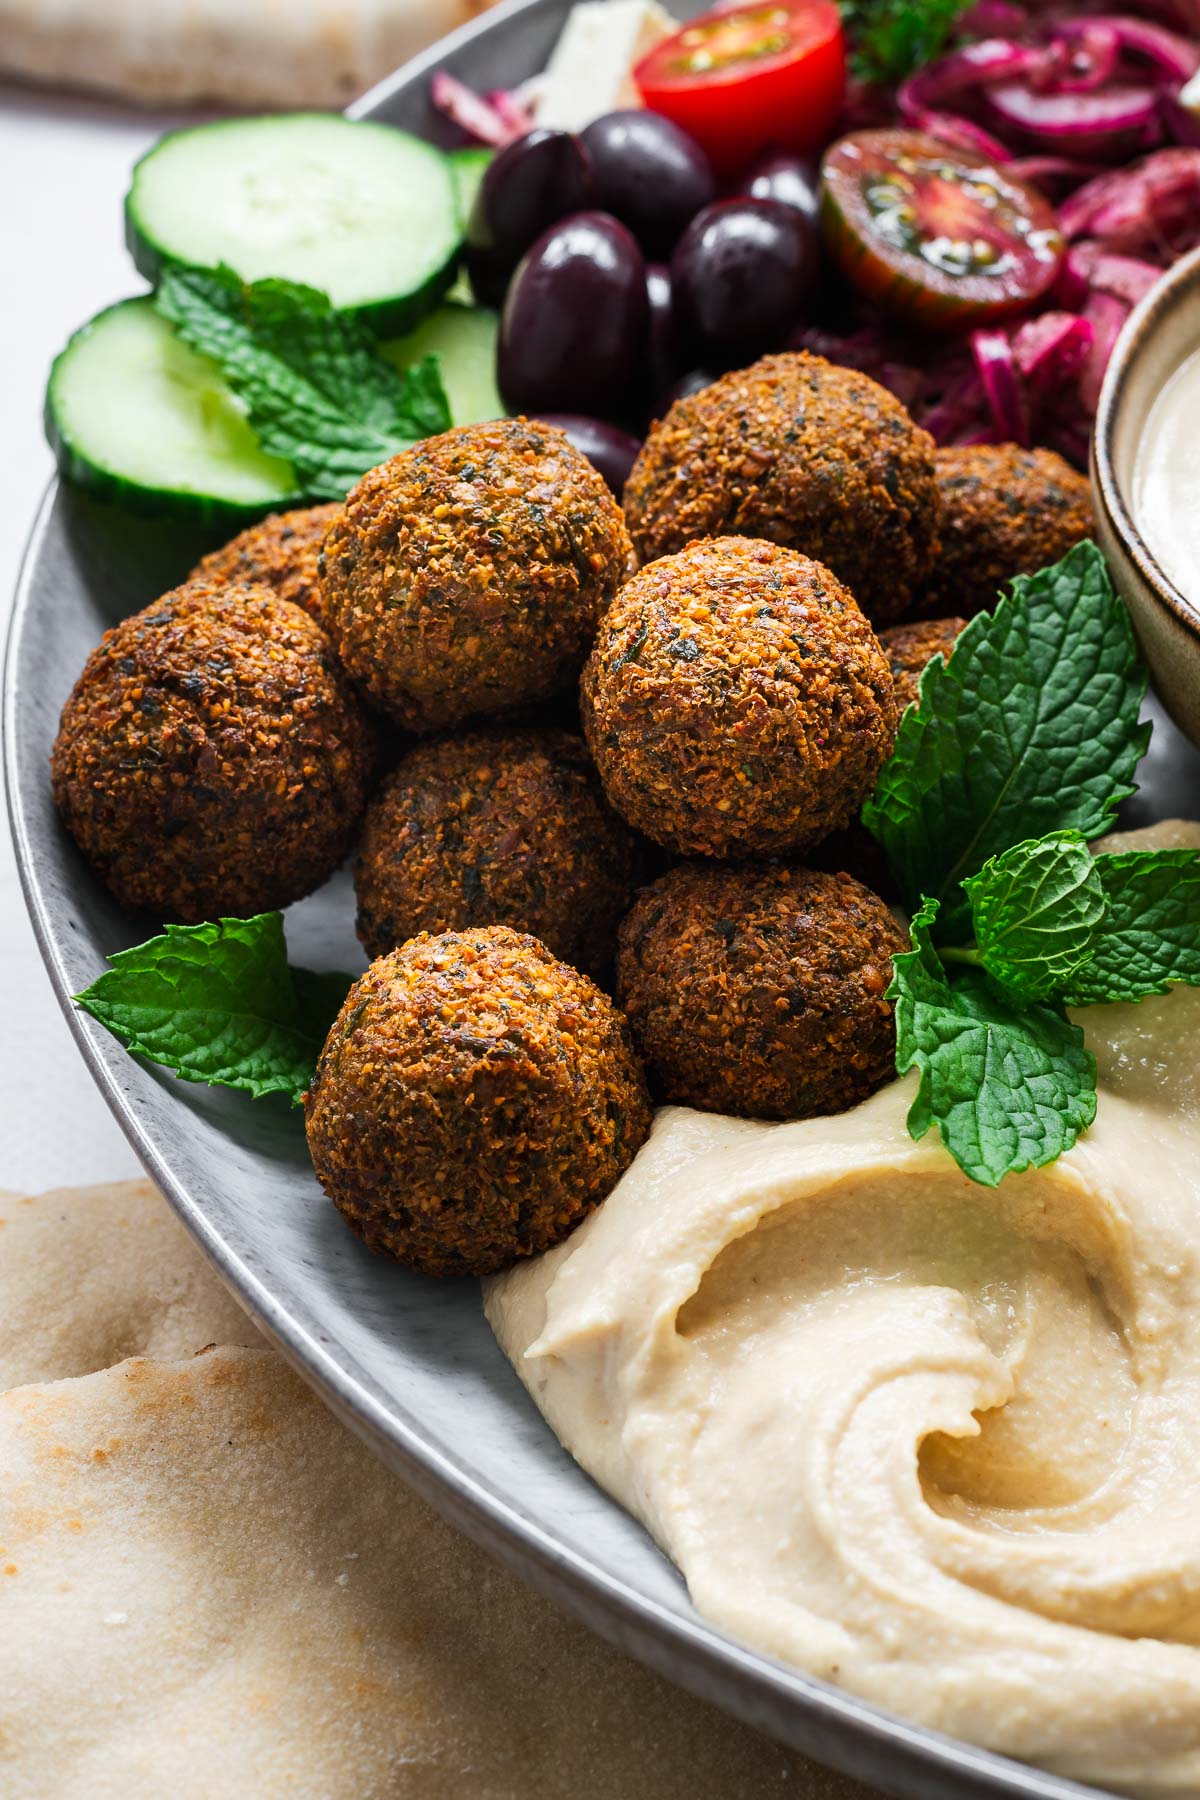 III. Ingredients Used in Middle Eastern Falafel